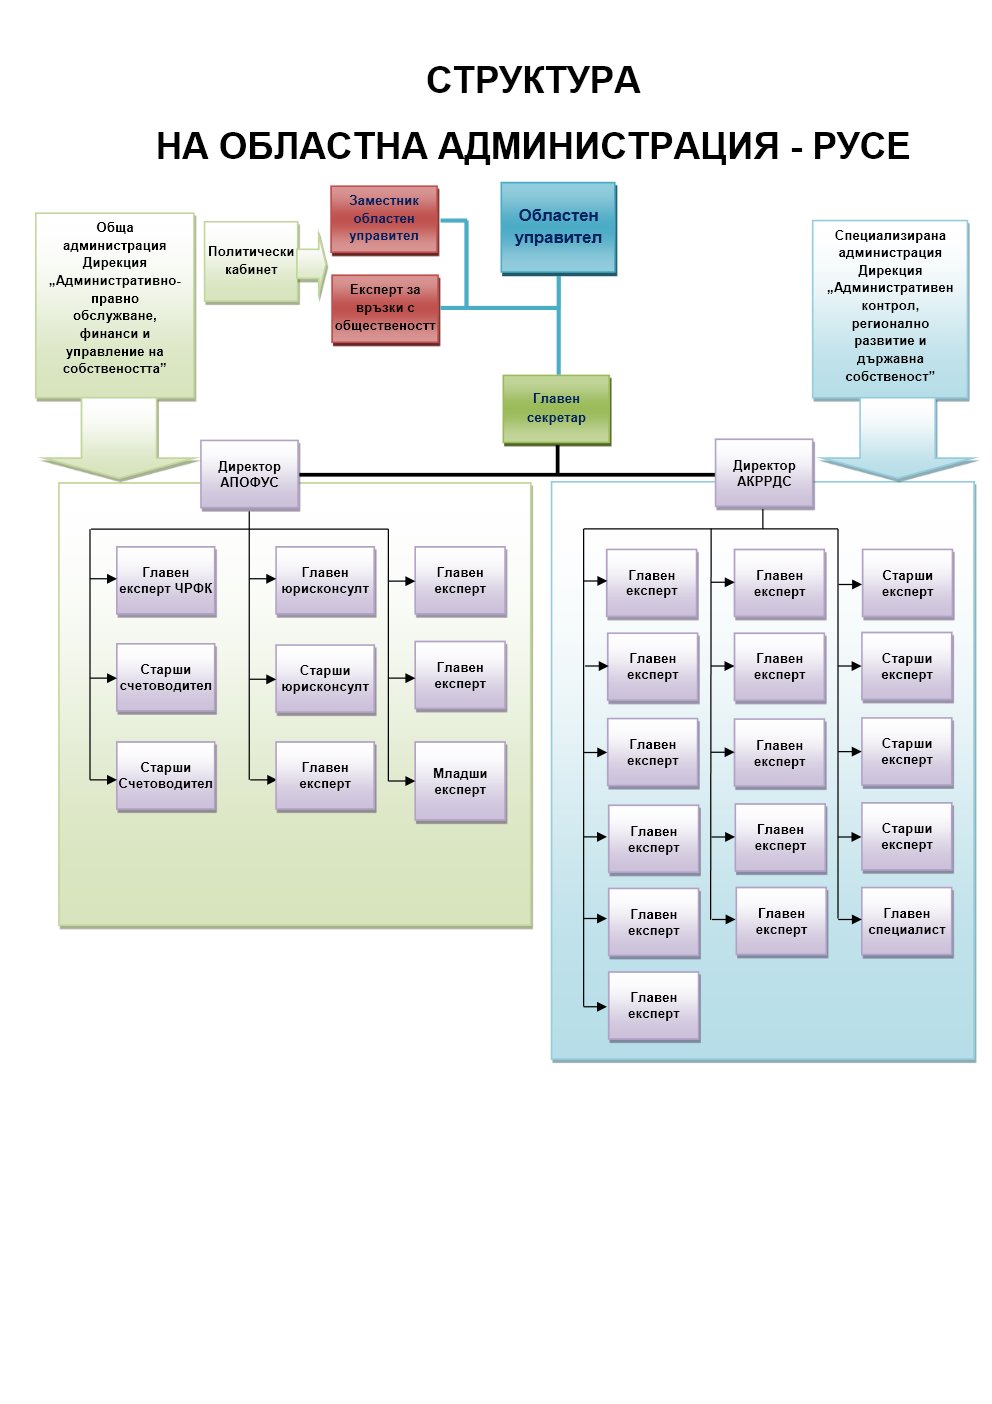 Организационна структура на Областна администрация - Русе